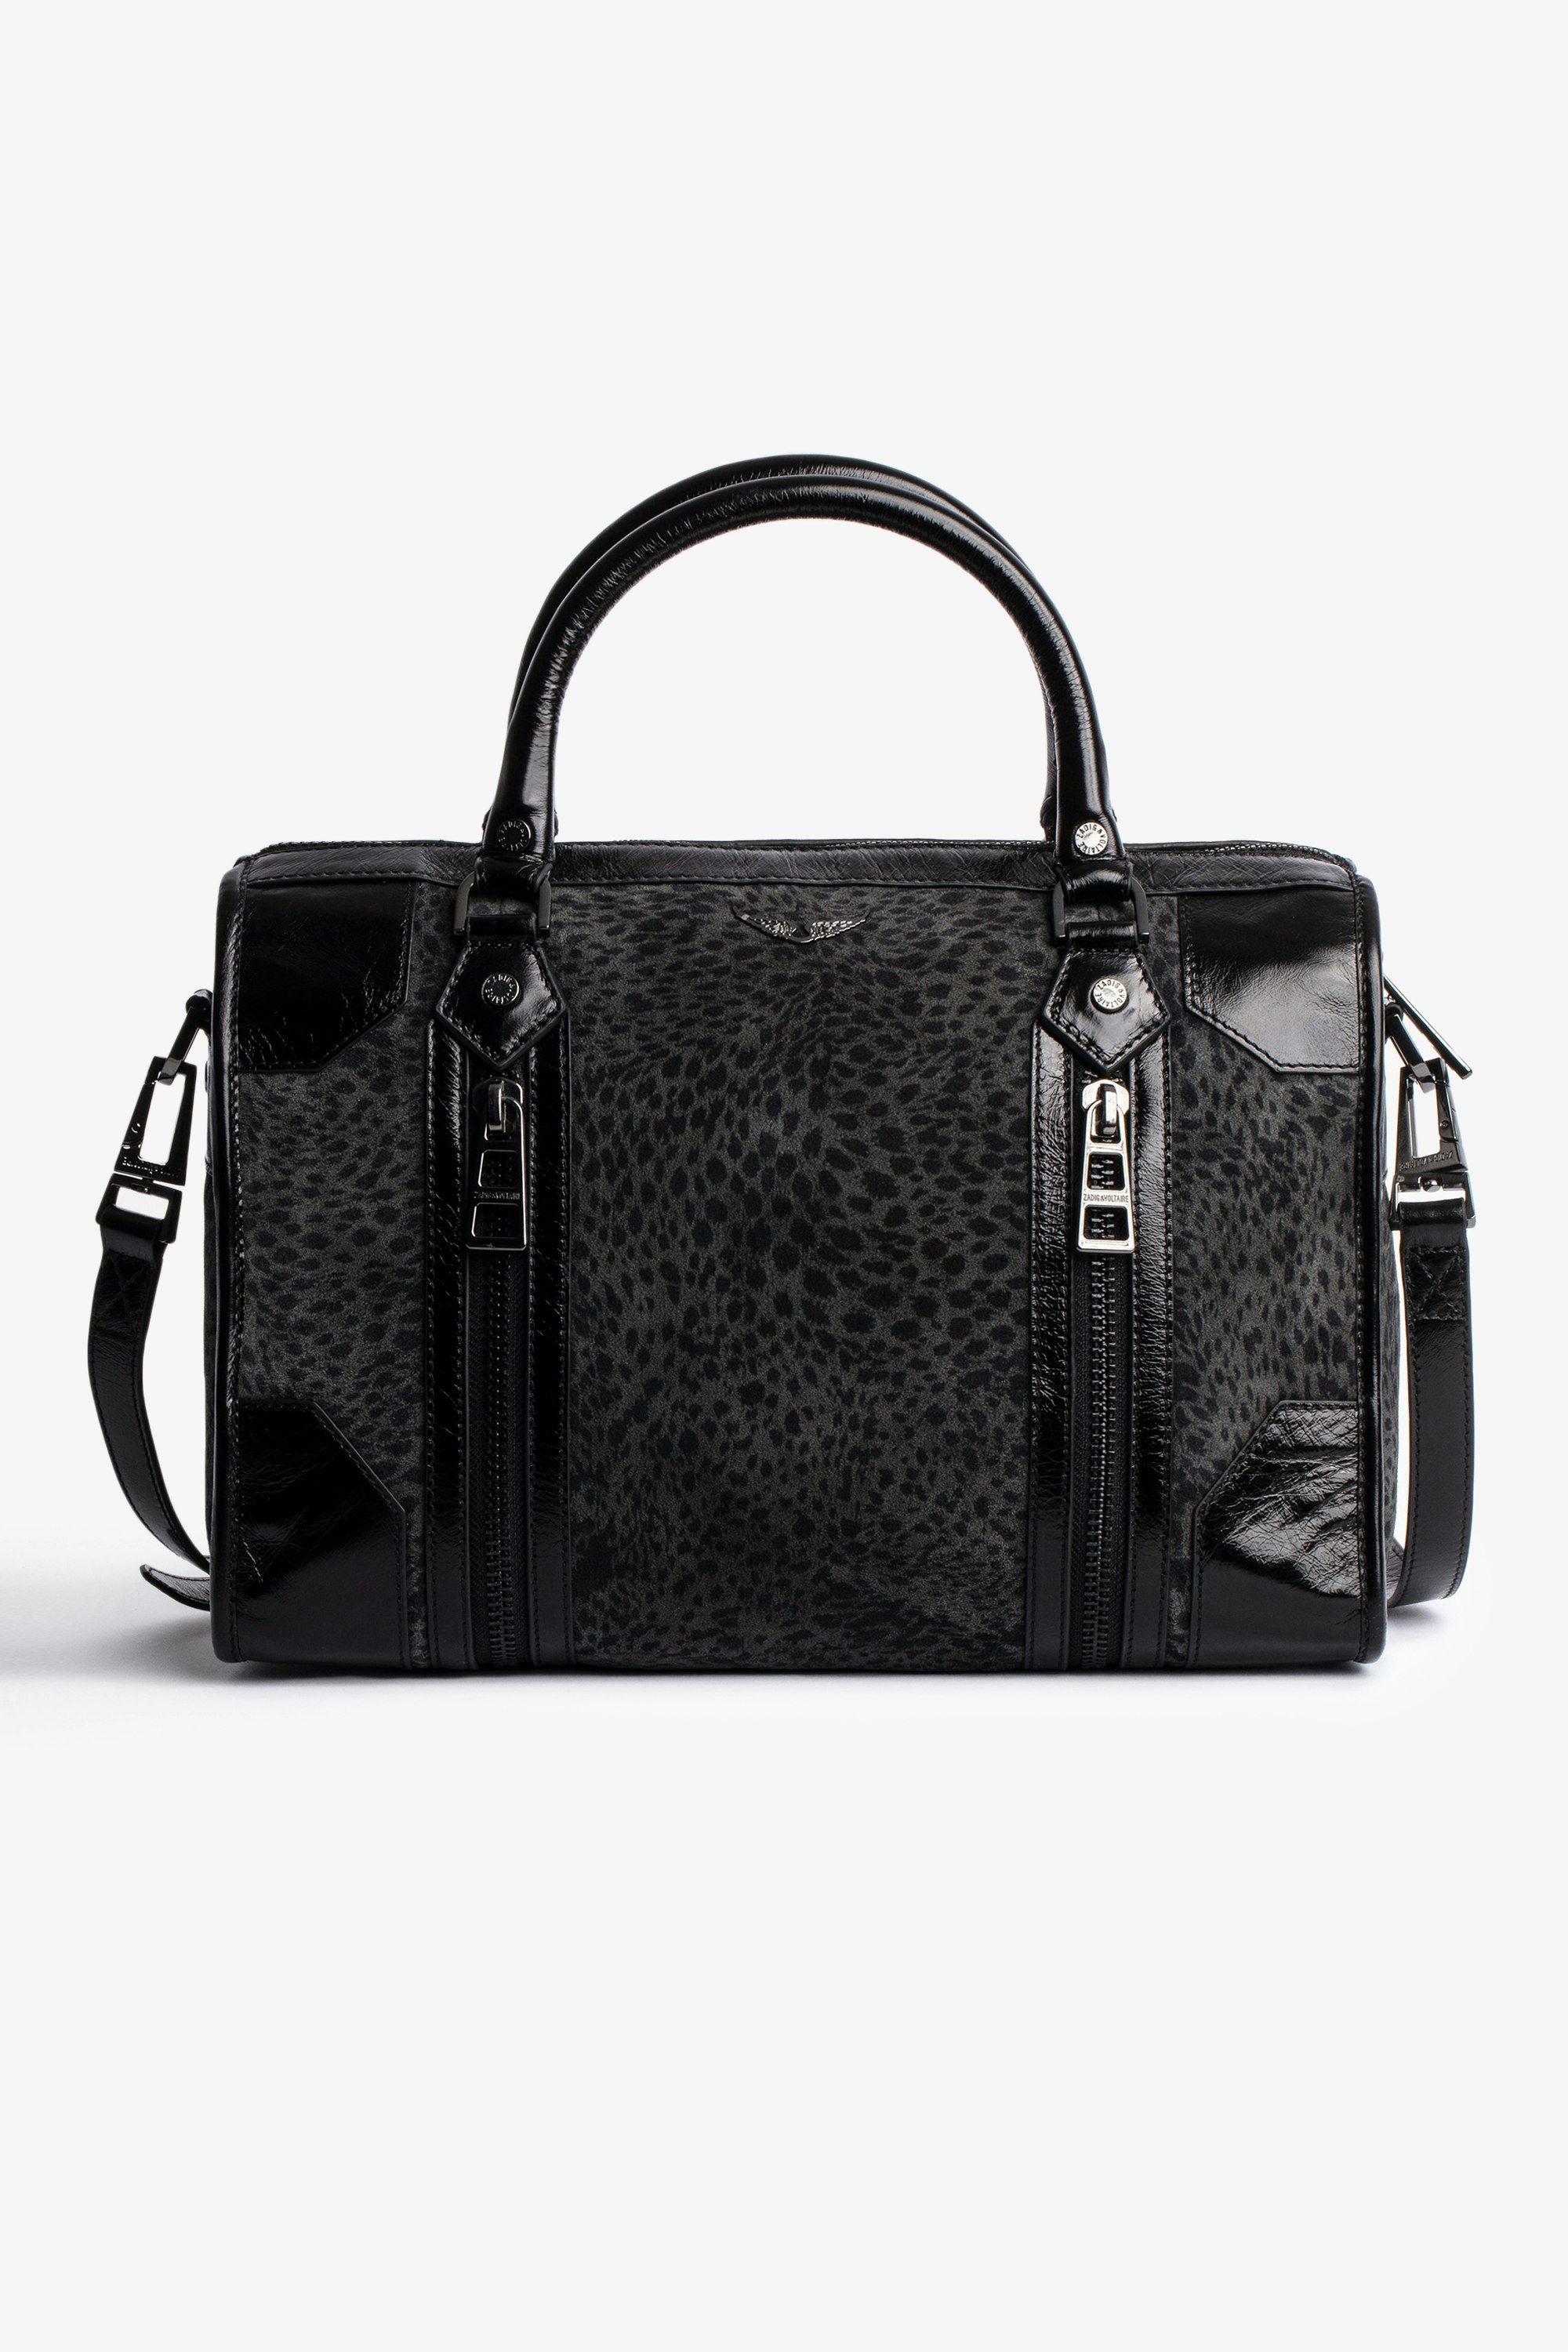 Sunny Medium #2 Bag Women's black suede shoulder bag in leopard print